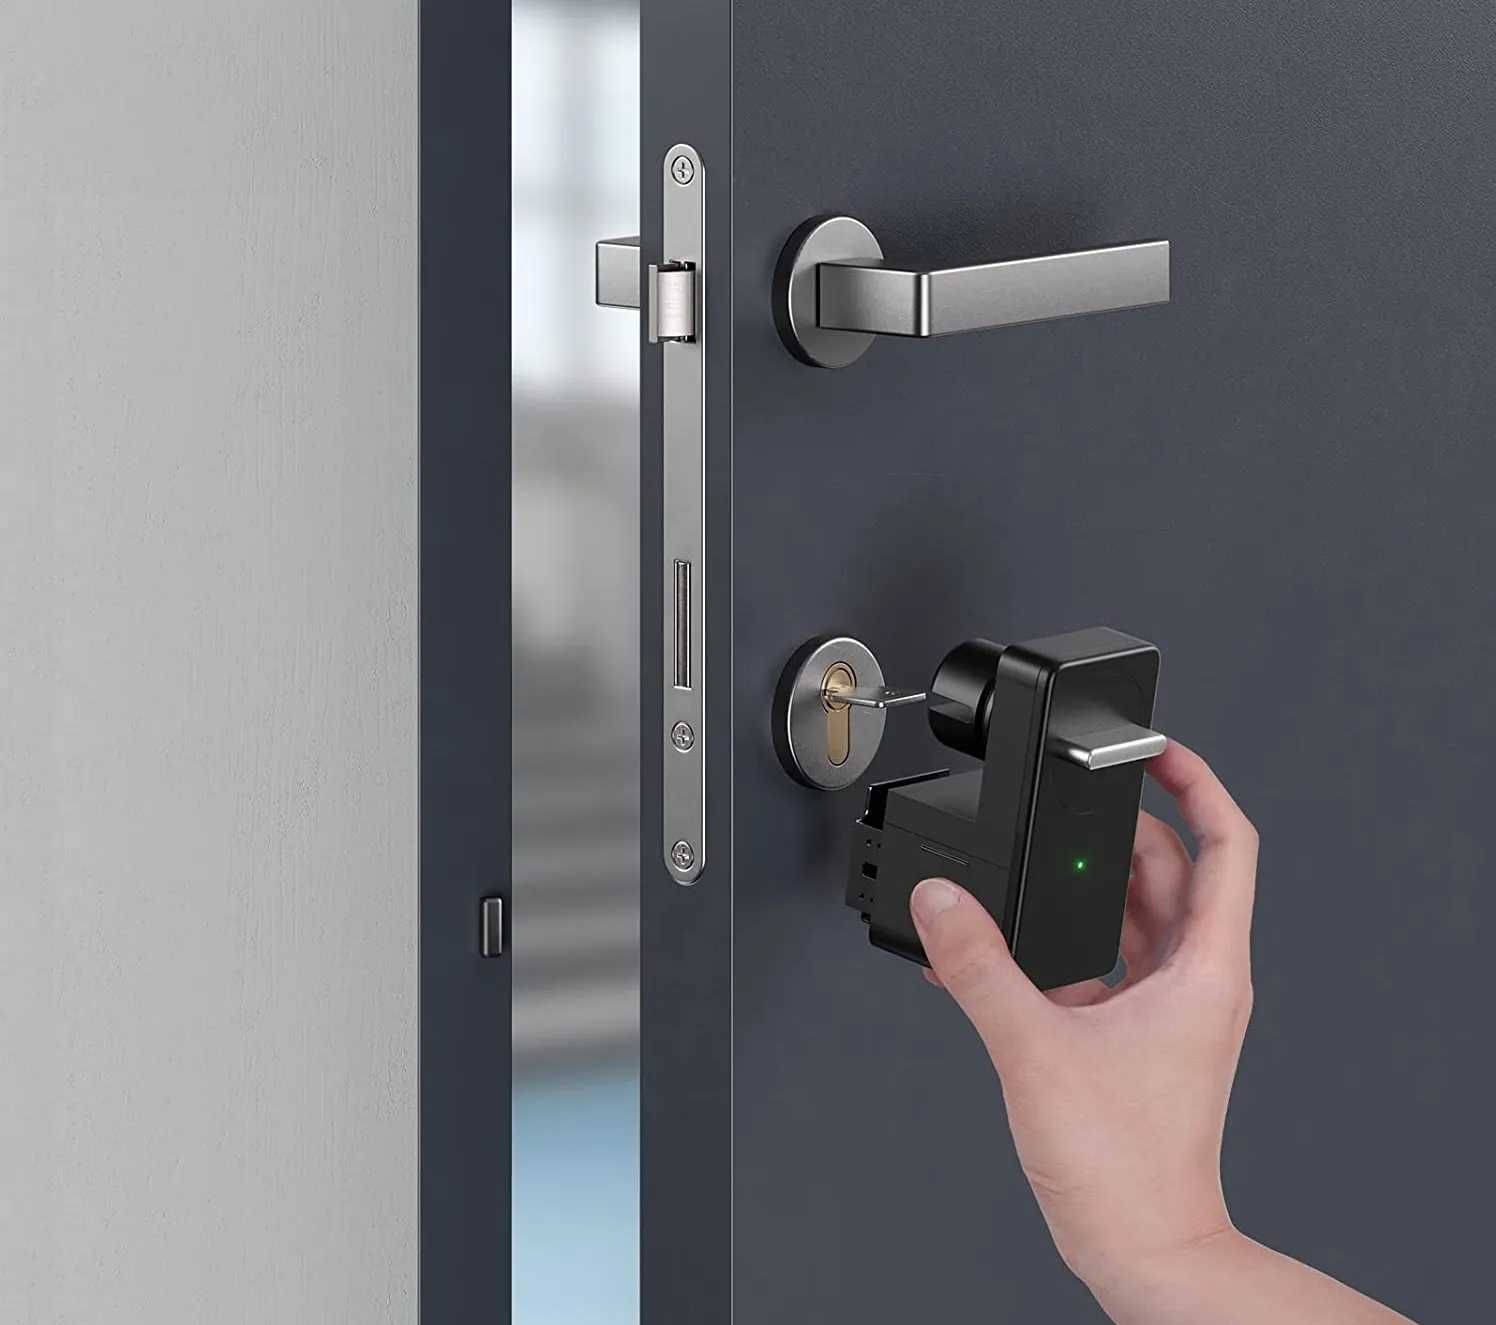 SwitchBot Lock
inteligentny zamek do drzwi